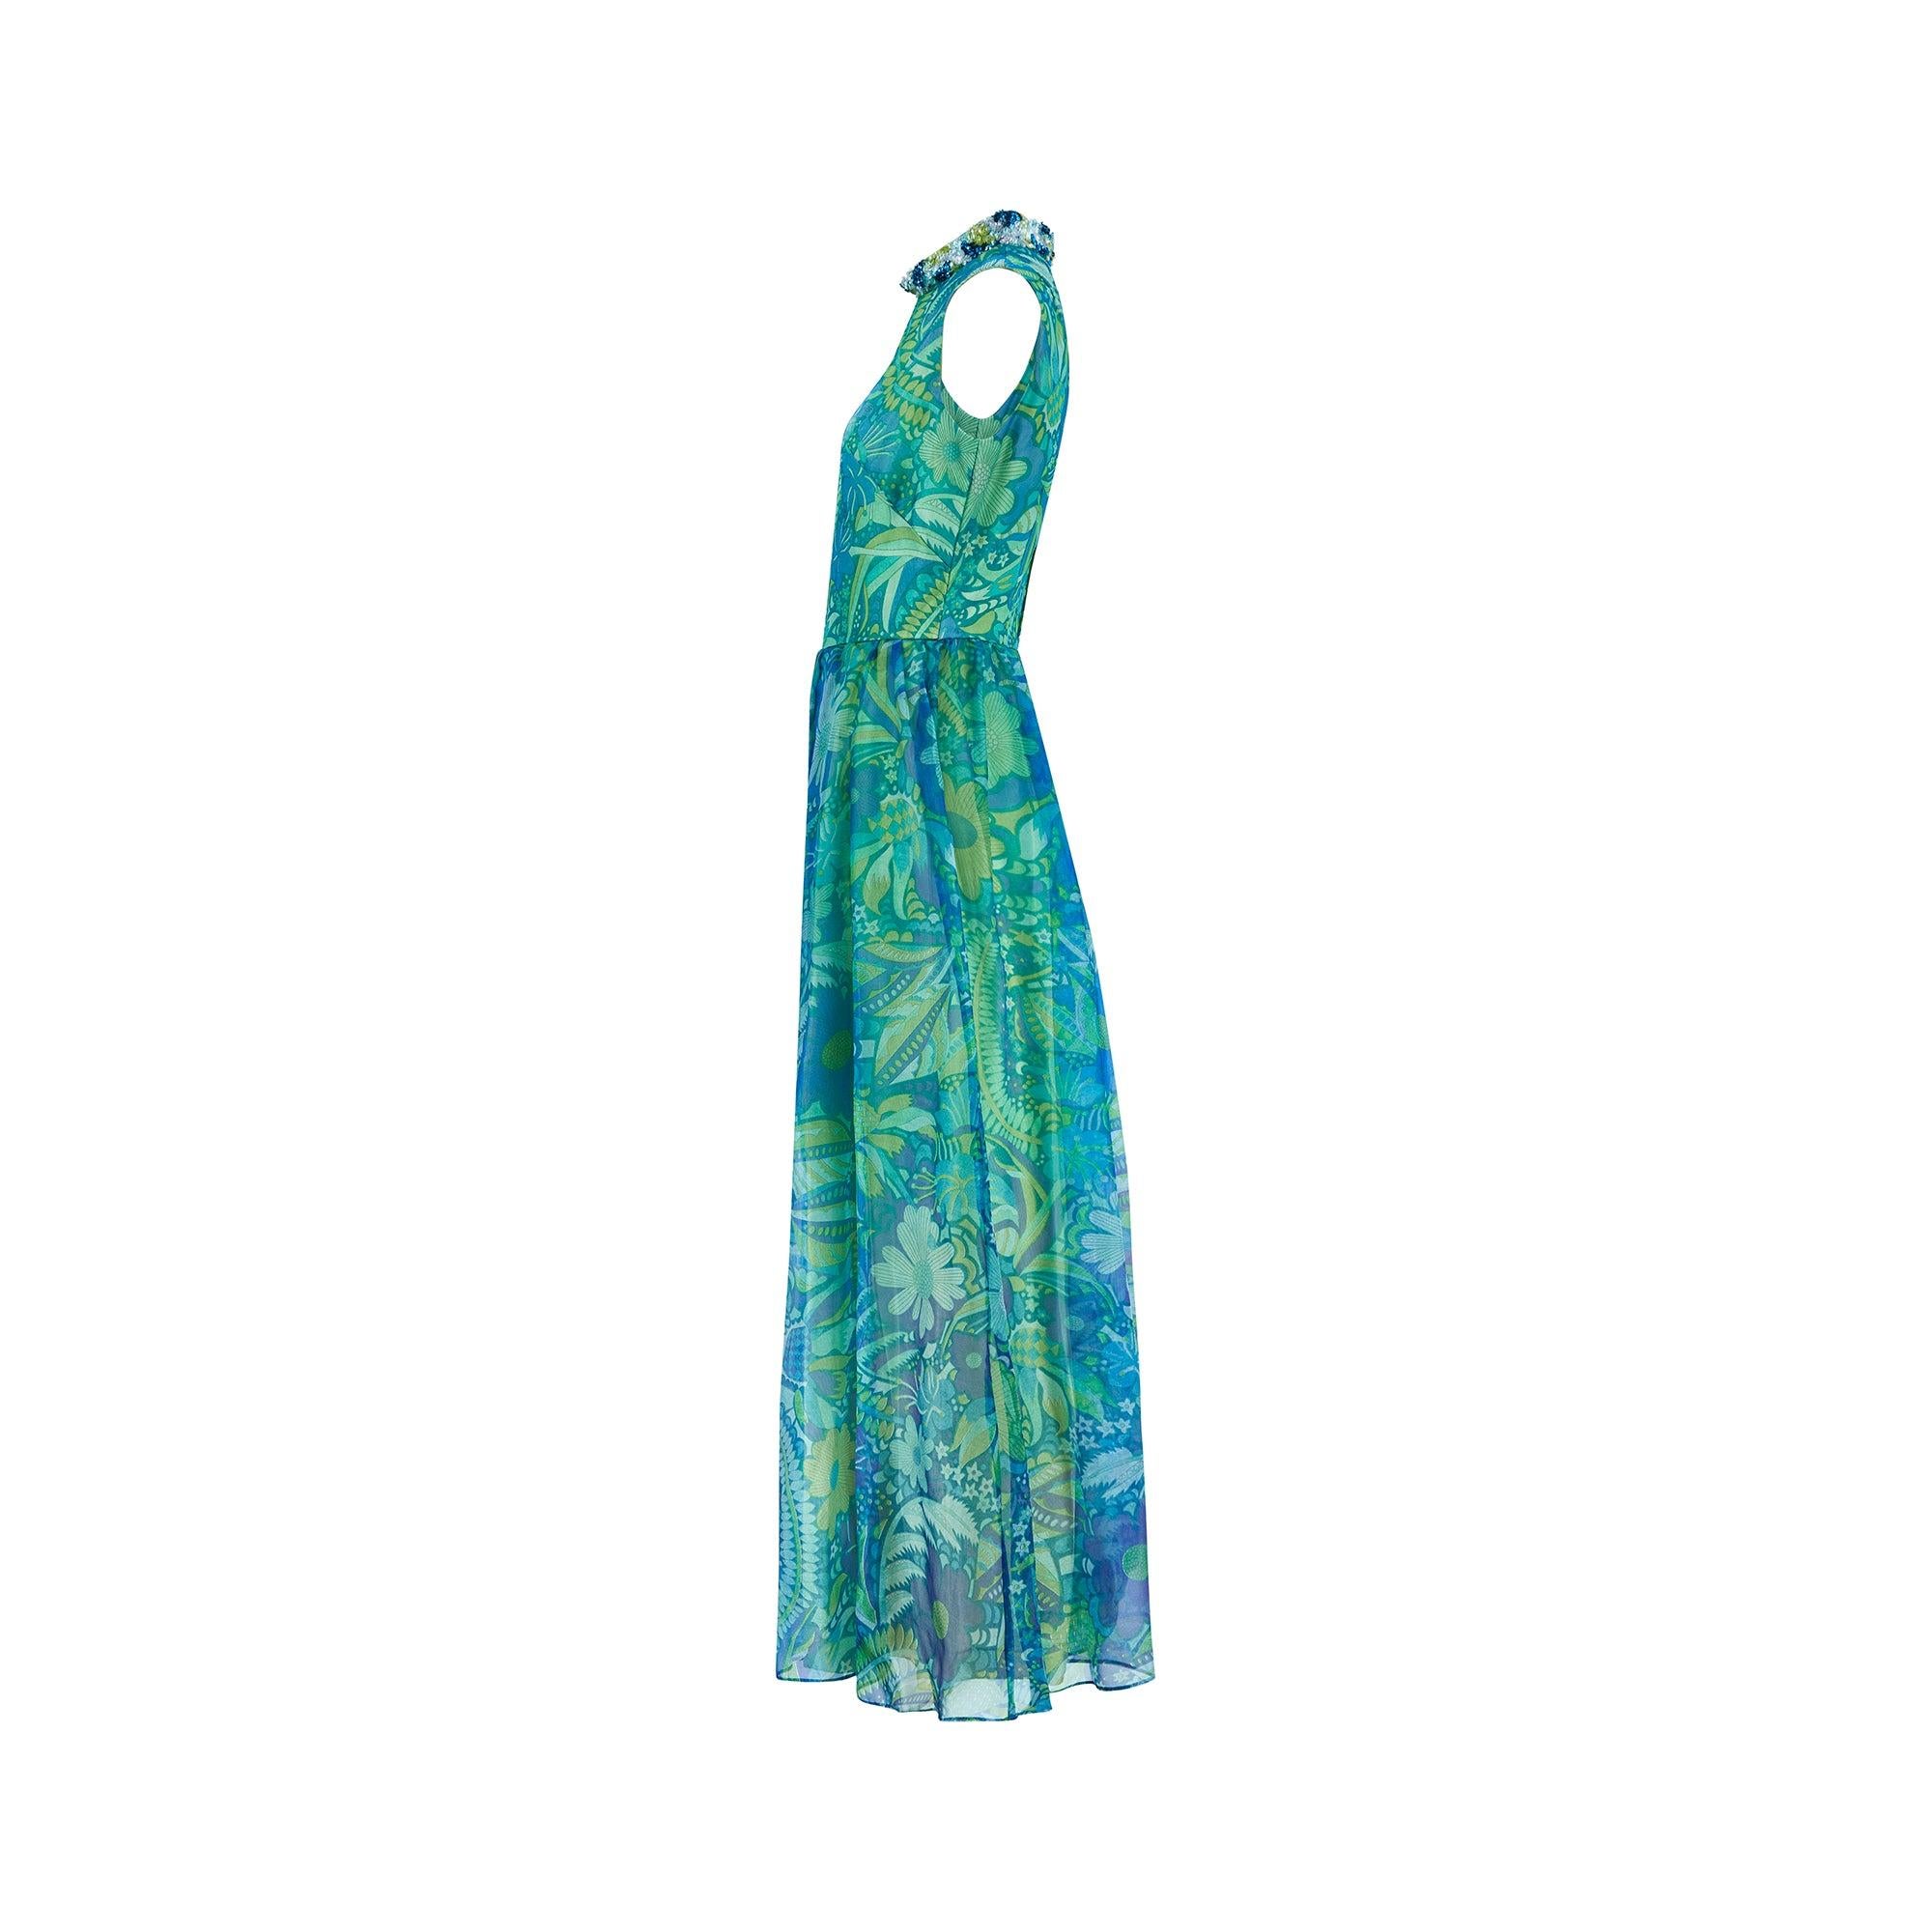 Dieser unglaubliche Jumpsuit wurde in den 1960er Jahren von Polmarks entworfen. Dieses theatralische Kleidungsstück aus fließendem, durchsichtigem Georgette, das mit psychedelischen Blumen in leuchtenden Blau- und Grüntönen bedruckt ist, ist auf